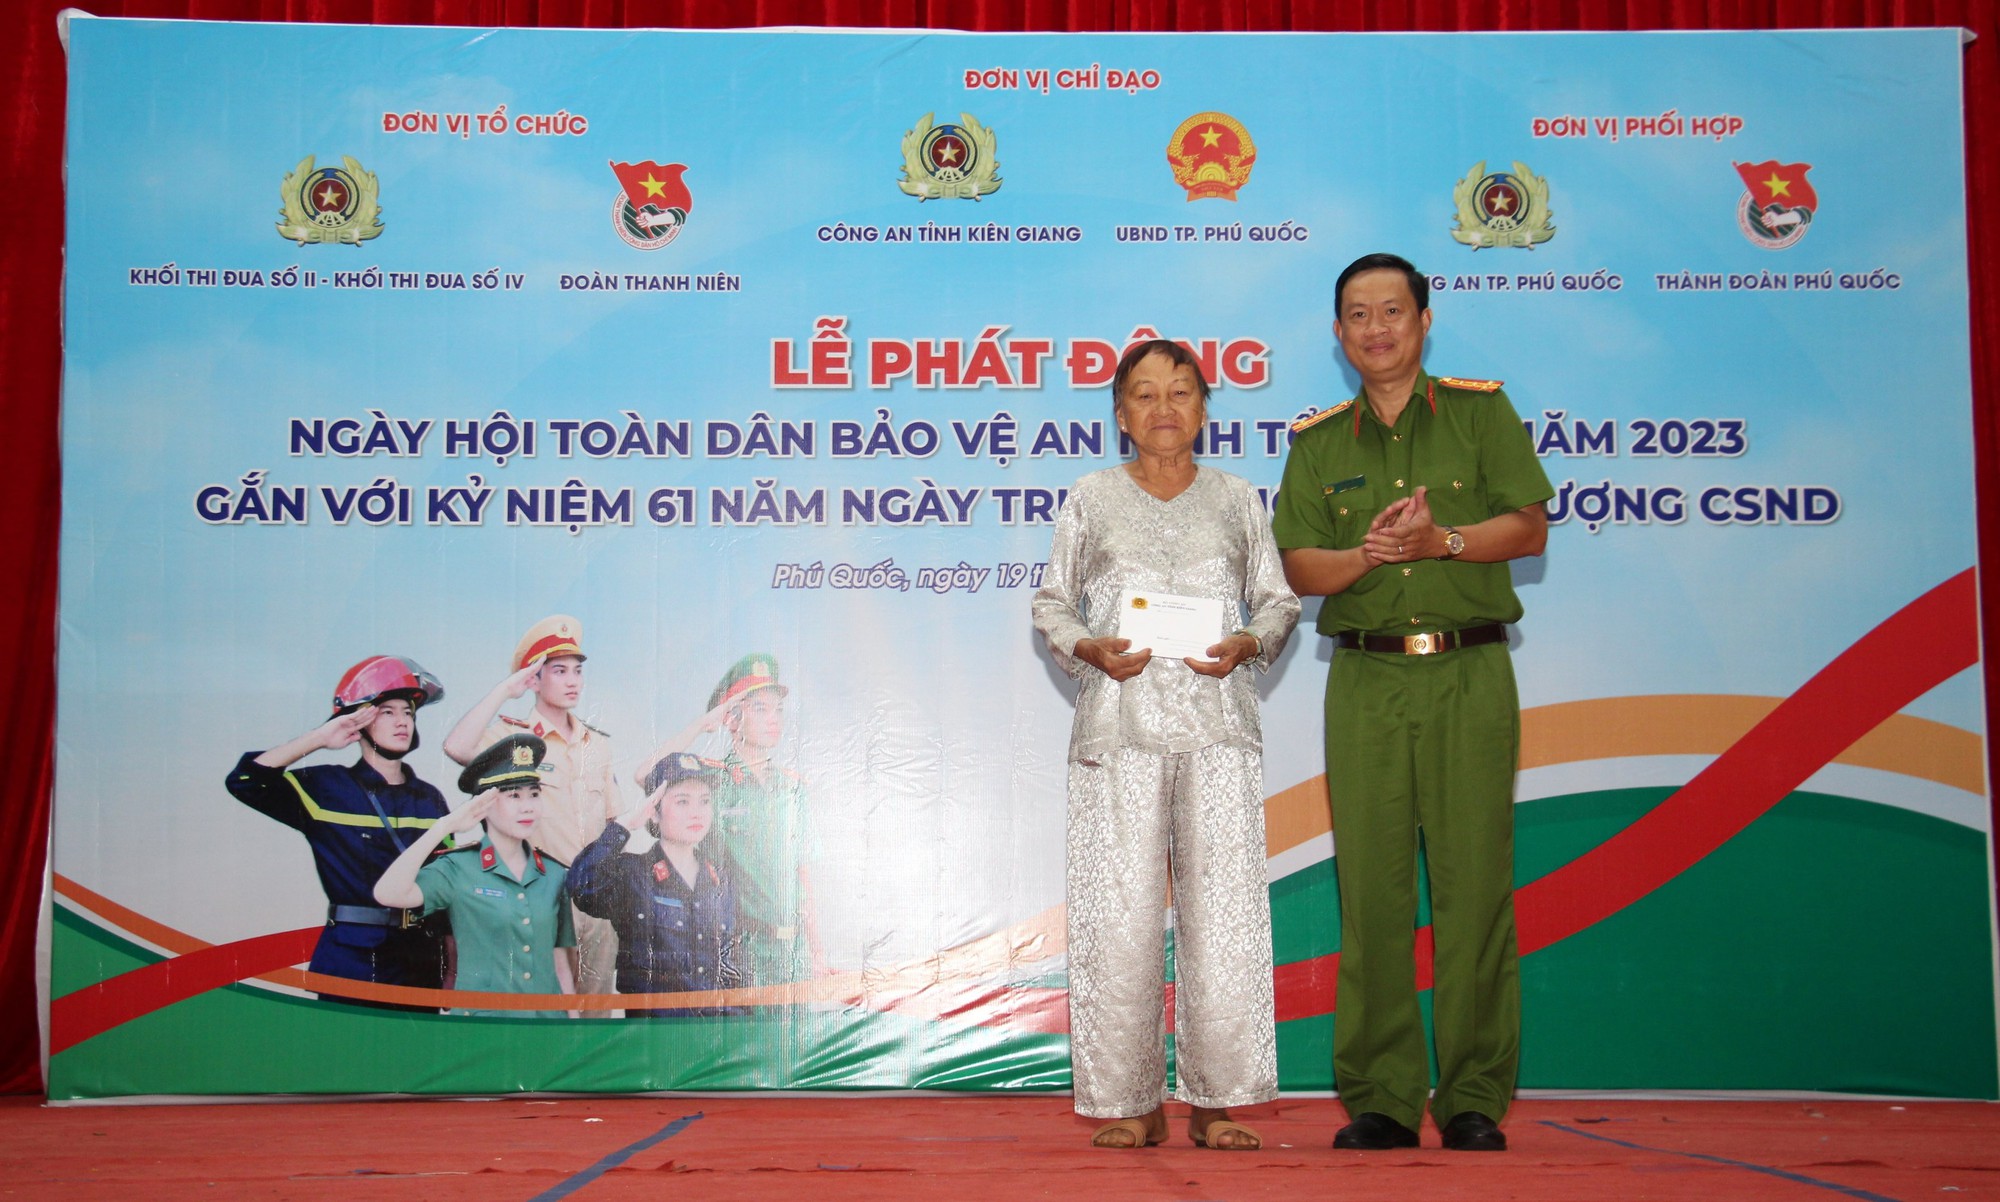 Công an tỉnh Kiên Giang tổ chức nhiều hoạt động tại Phú Quốc - Ảnh 5.